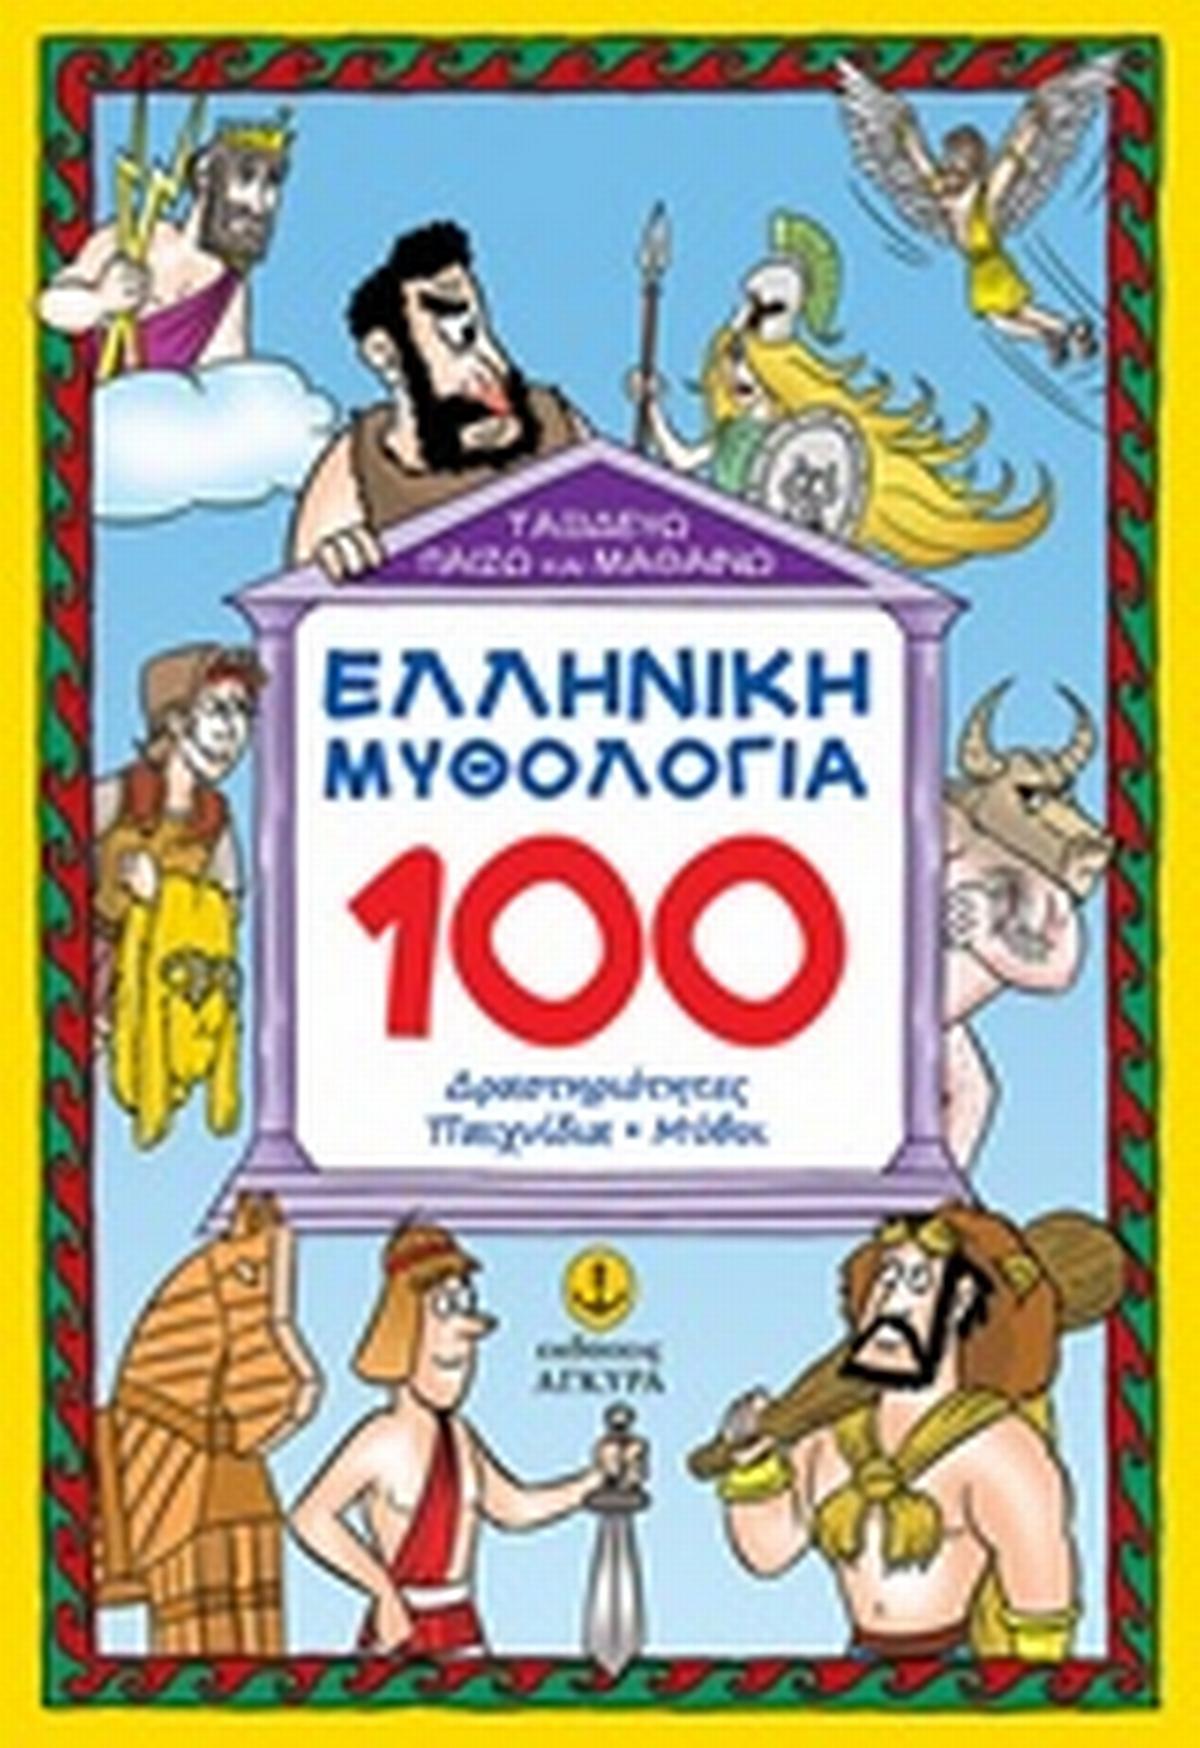 Ελληνική μυθολογία: 100 δραστηριότητες, παιχνίδια, μύθοι